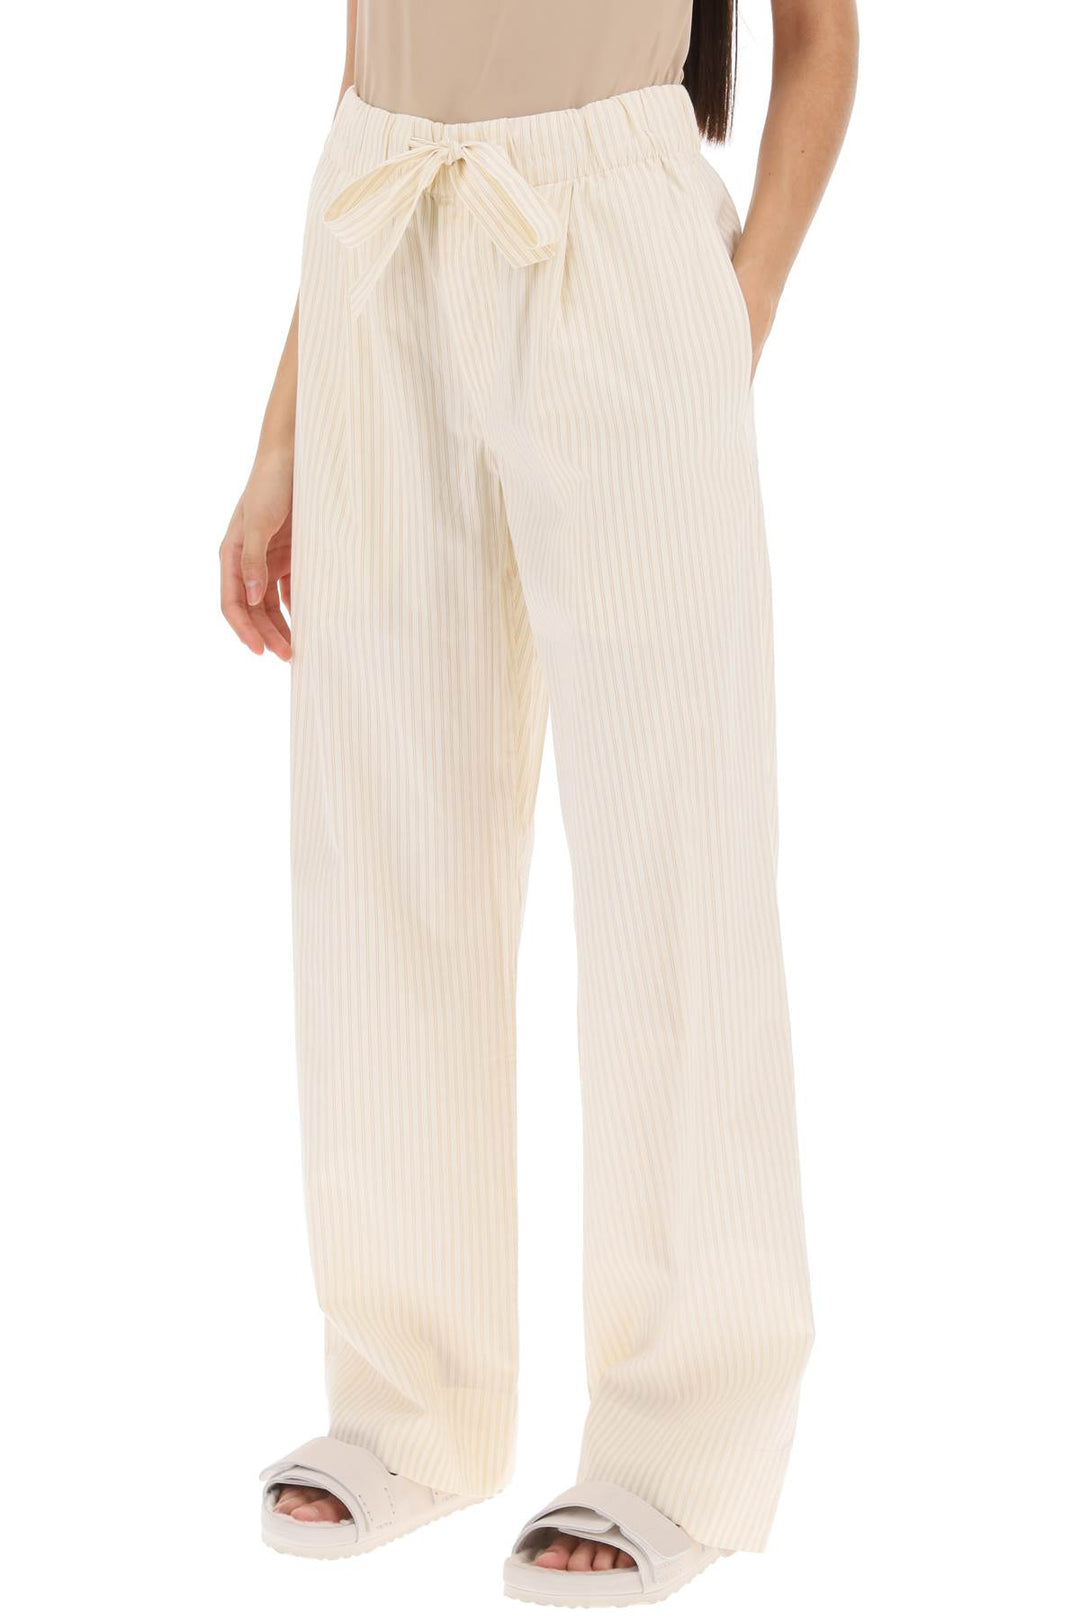 Birkenstock x tekla pajama pants in striped organic poplin-3